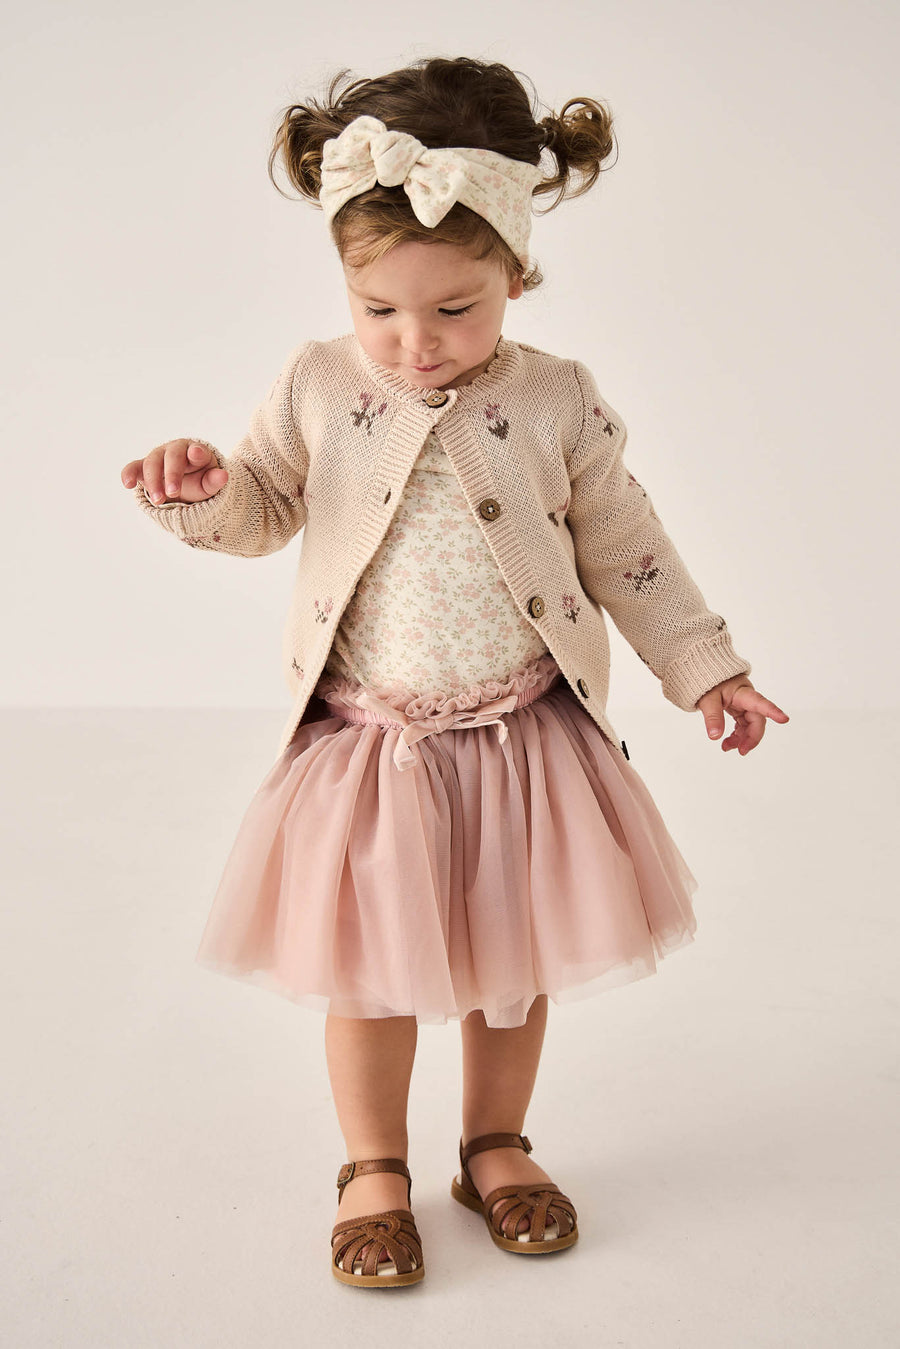 Classic Tutu Skirt - Powder Pink Childrens Skirt from Jamie Kay NZ